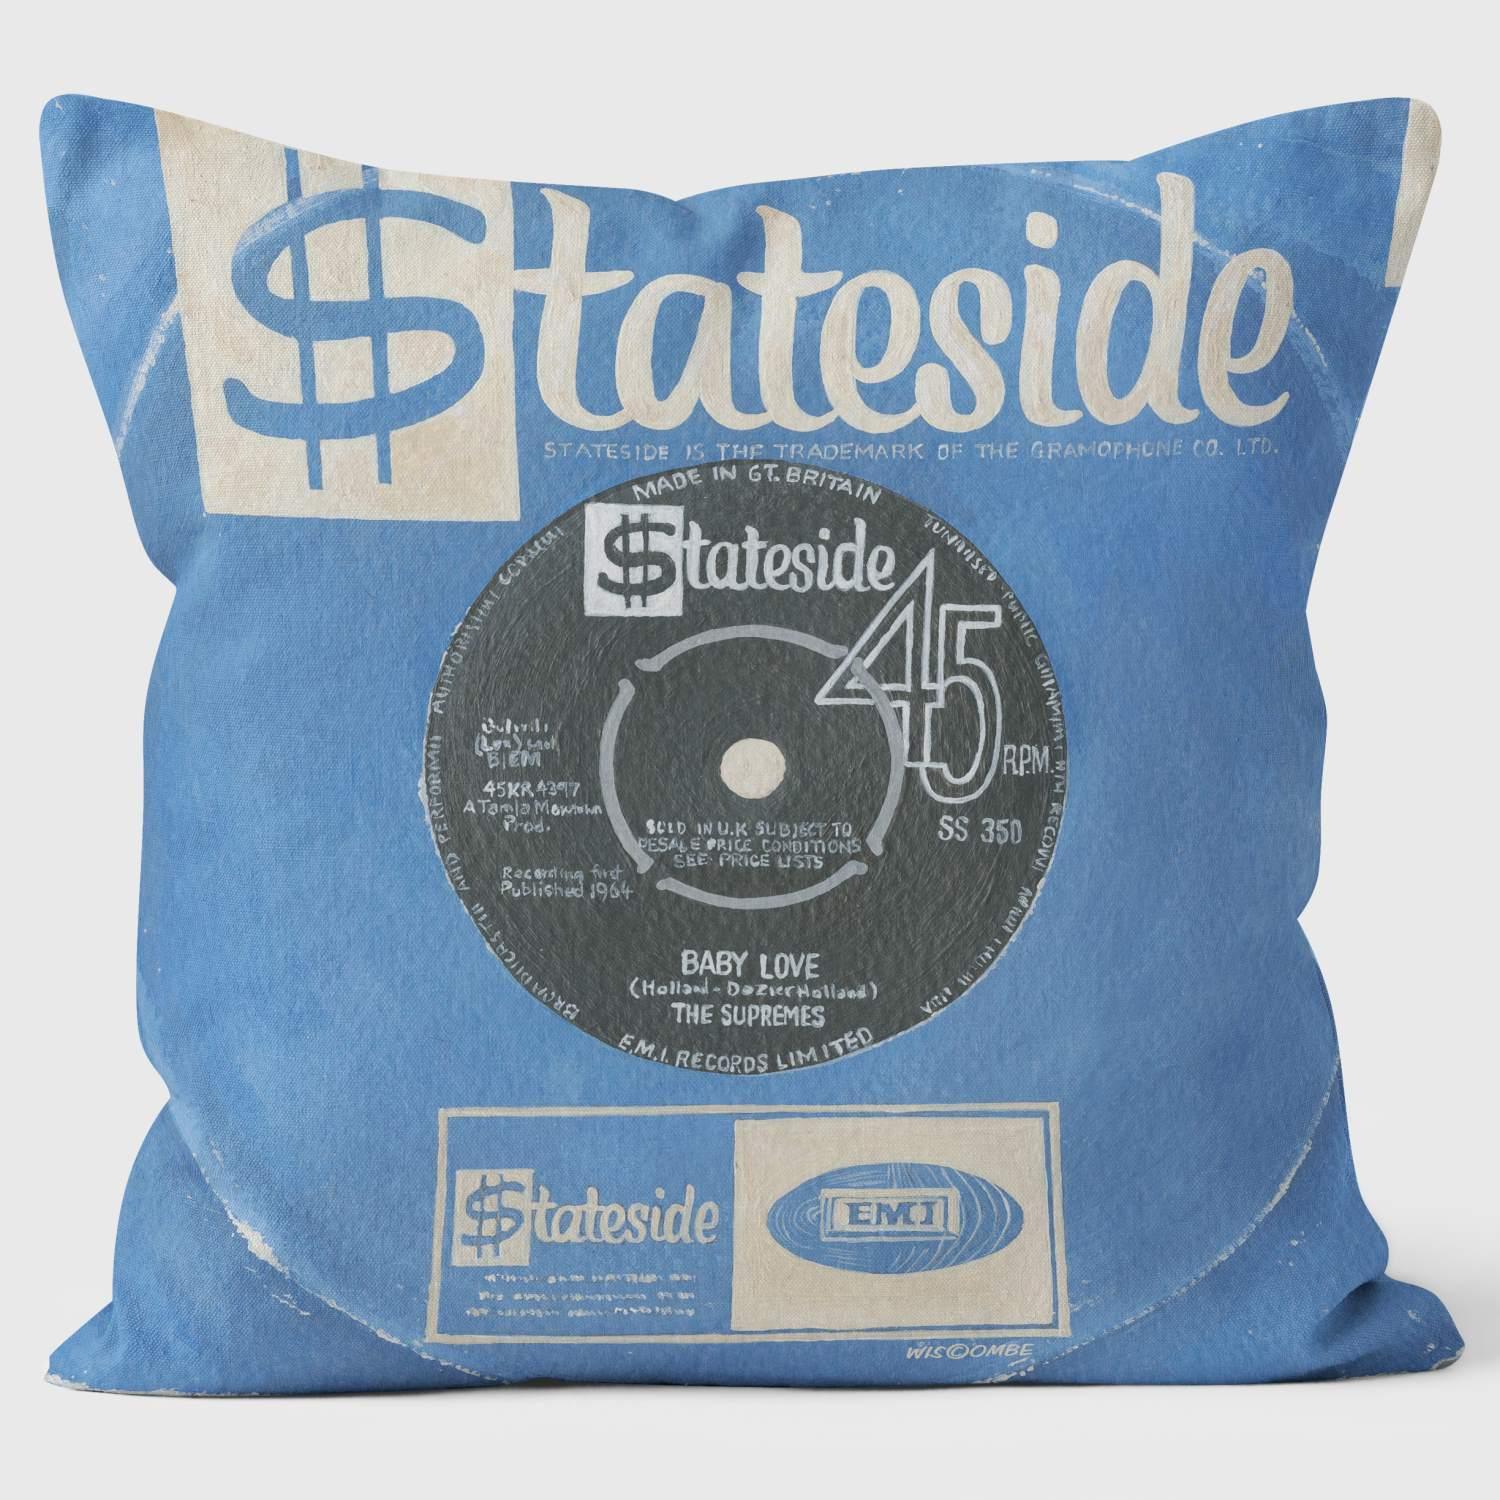 Baby love Stateside - Martin Wiscombe - Classic Singles Cushion - Handmade Cushions UK - WeLoveCushions